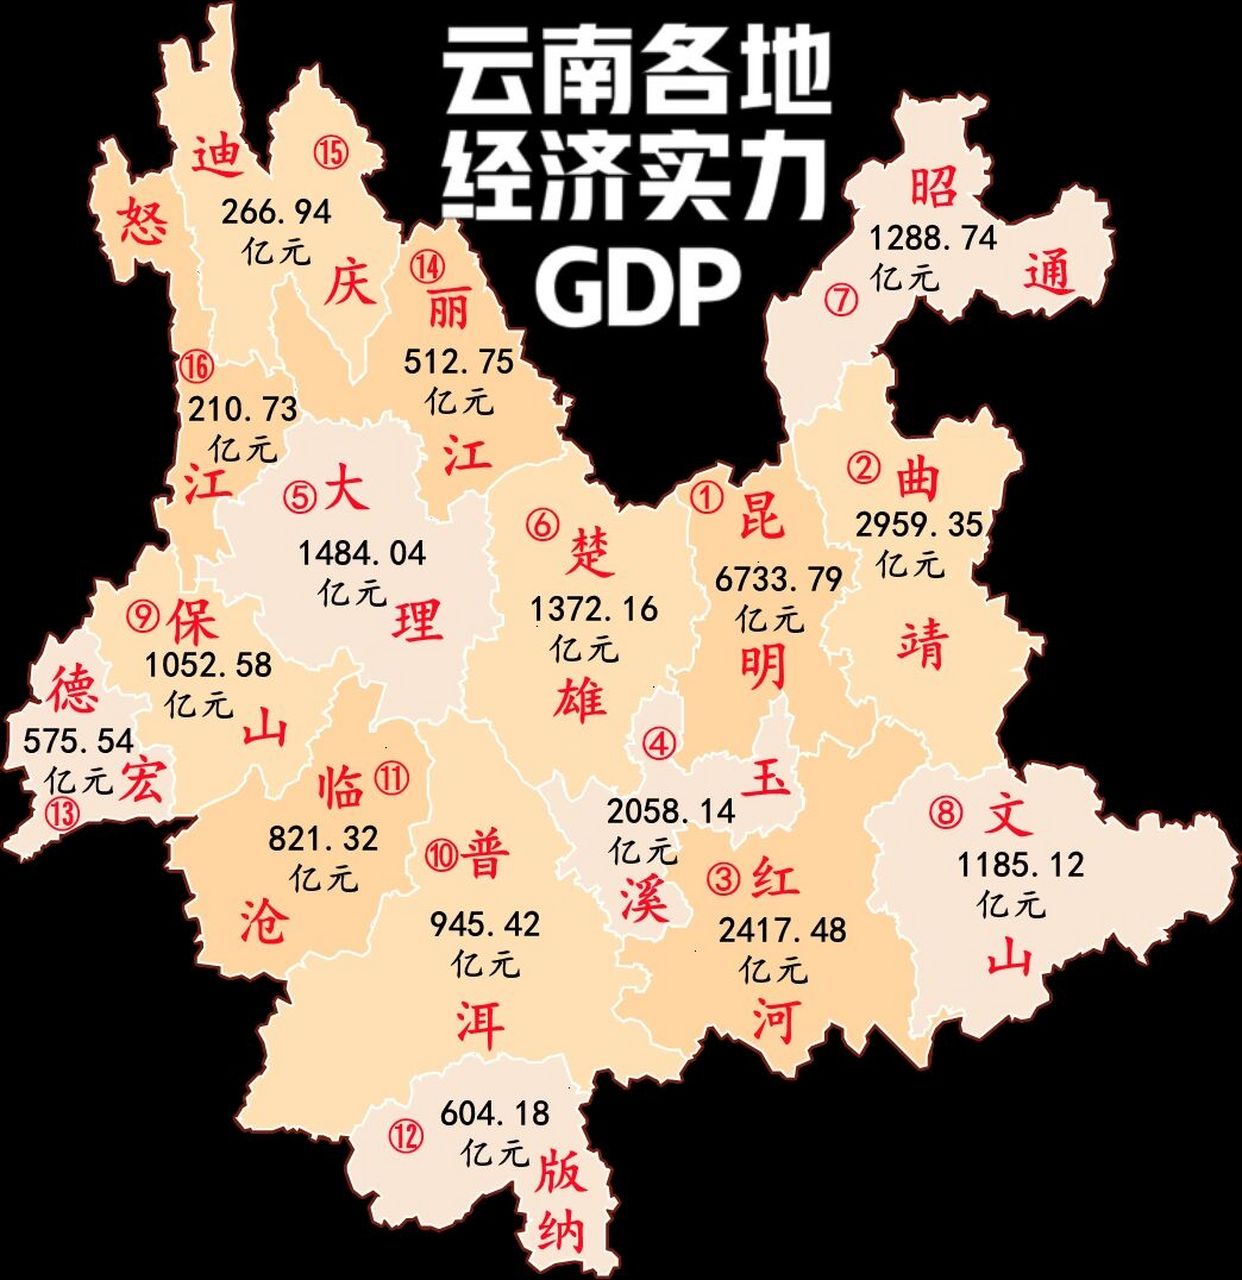 云南16地州gdp排行榜